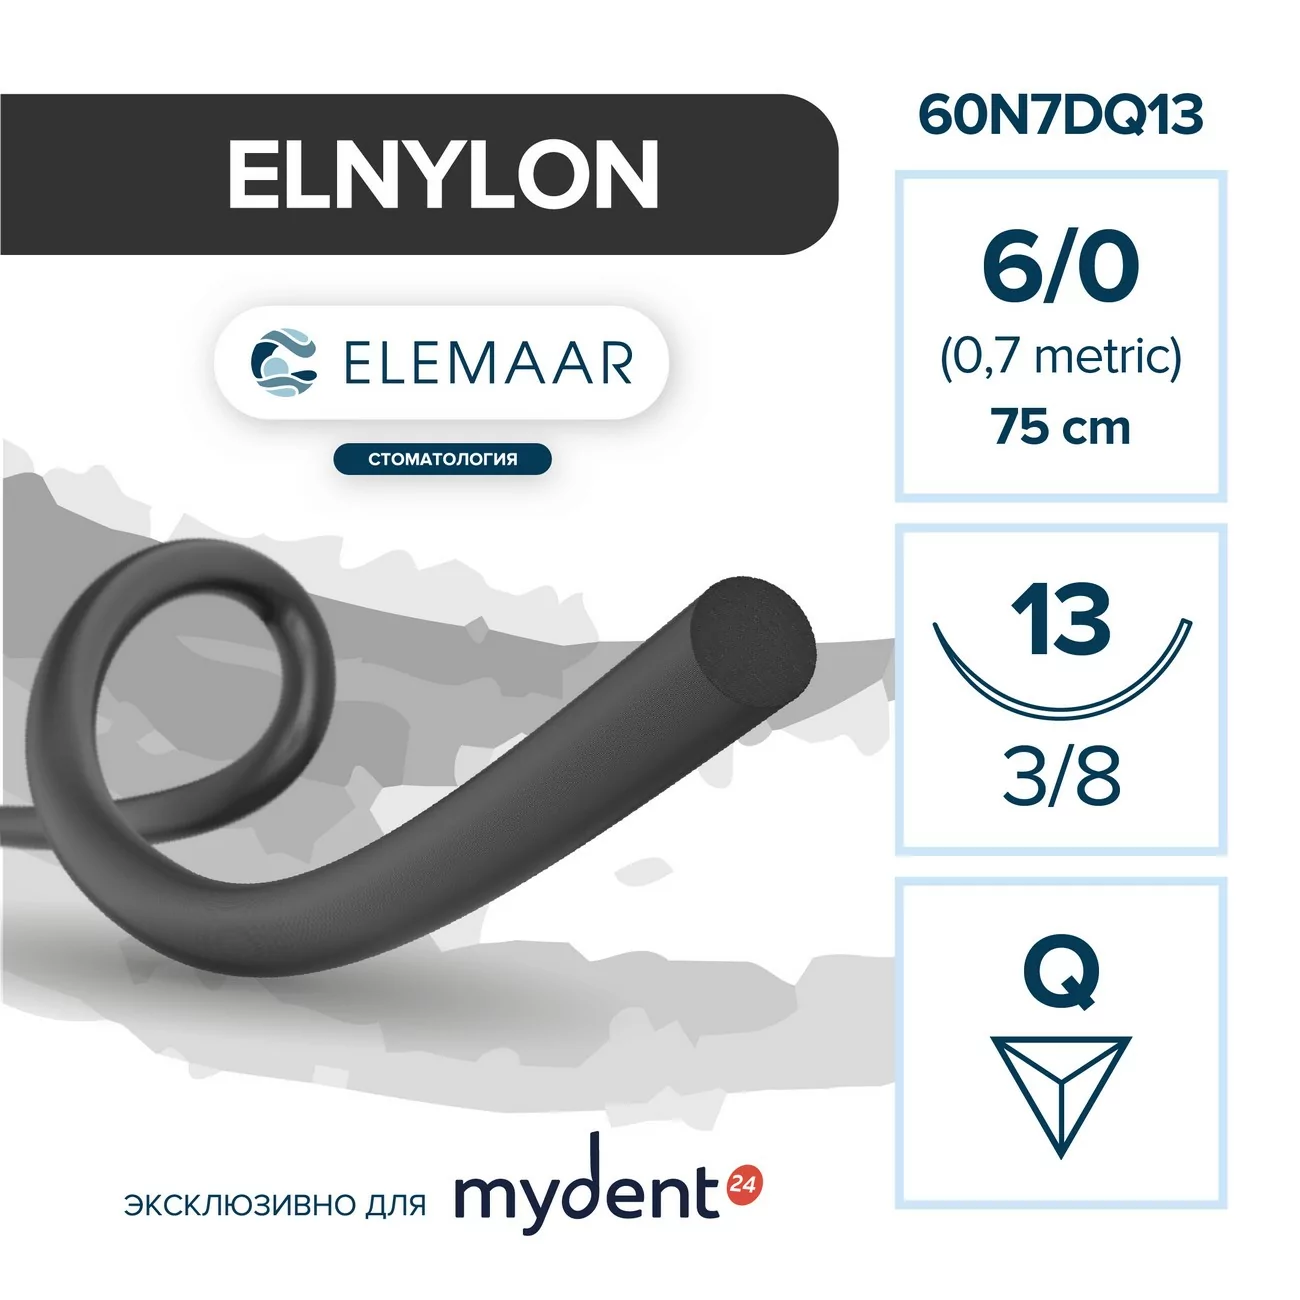 Шовный материал ELNYLON 6/0 (12 шт, 75 см, 3/8, 13 мм, обратно-режущая)